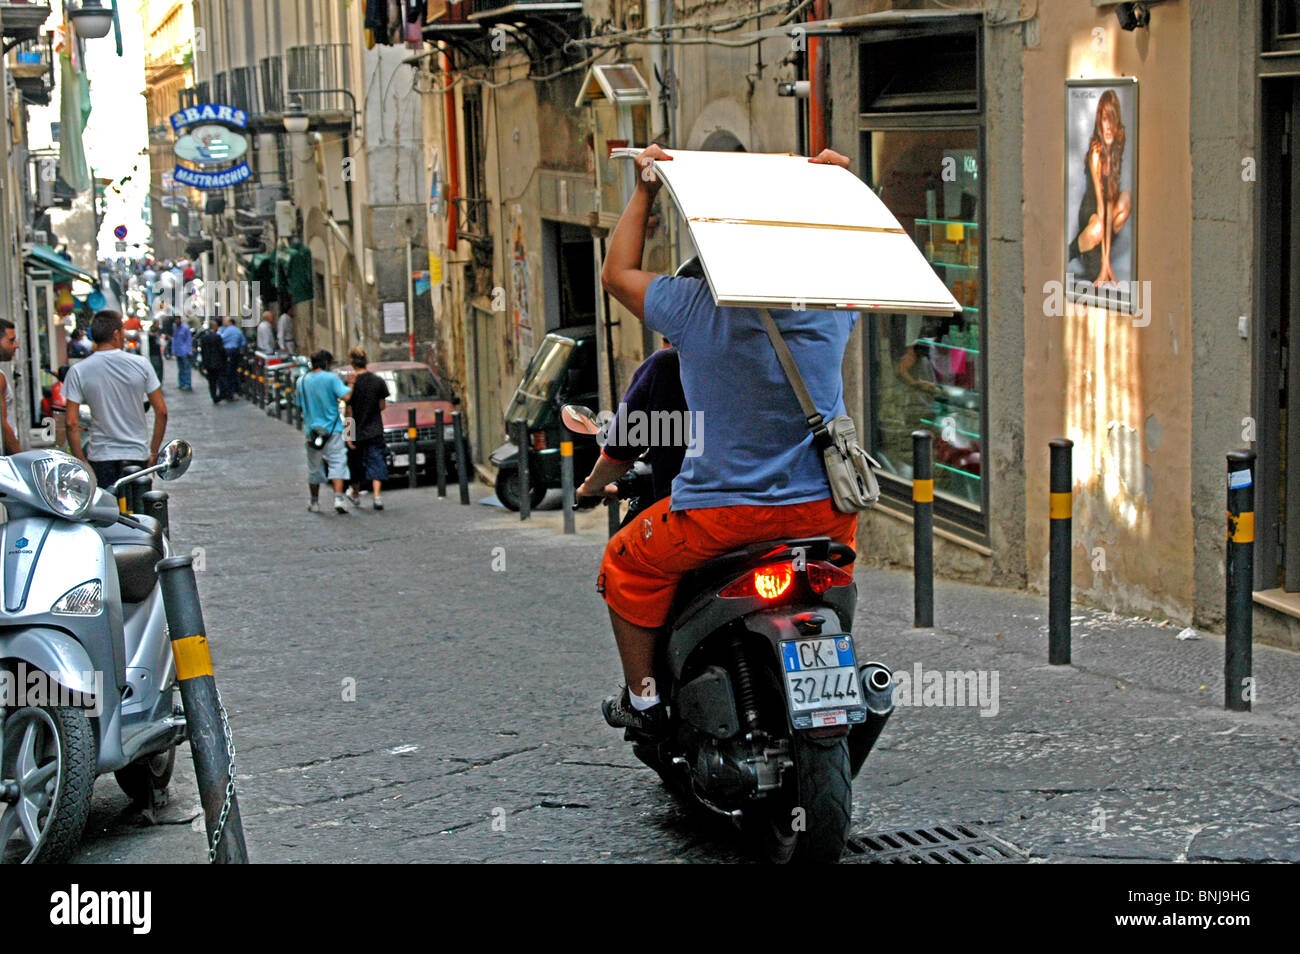 Una scena di strada a Napoli Italia - un passeggero posteriore porta una lastra di cartongesso sulla sua testa Foto Stock